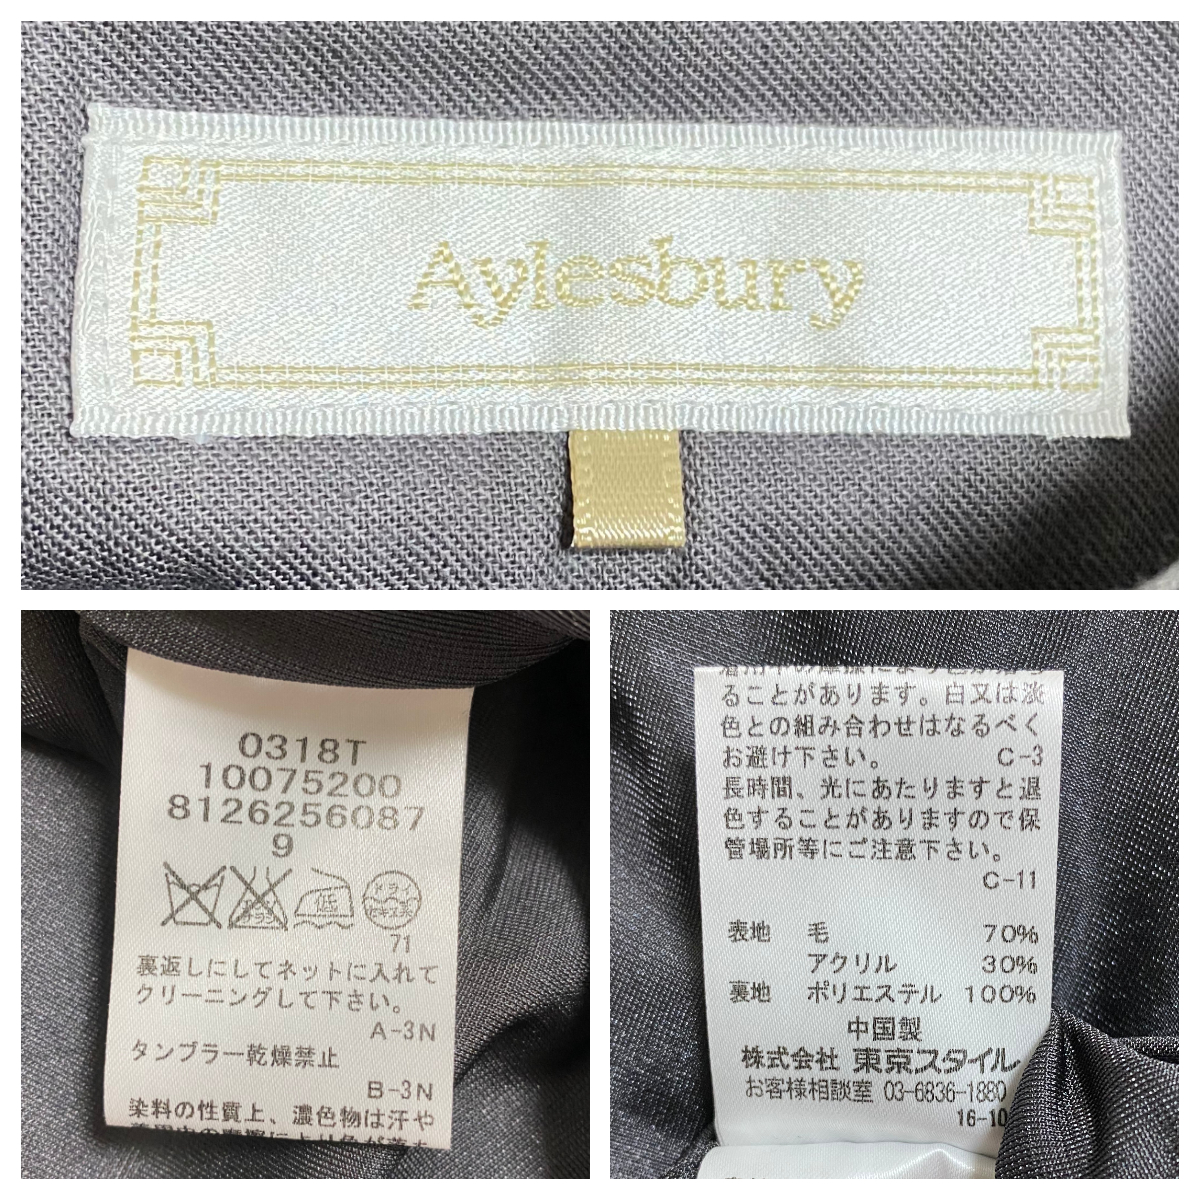 (2)[ Aylesbury ] проверка юбка шерсть 70% размер 9